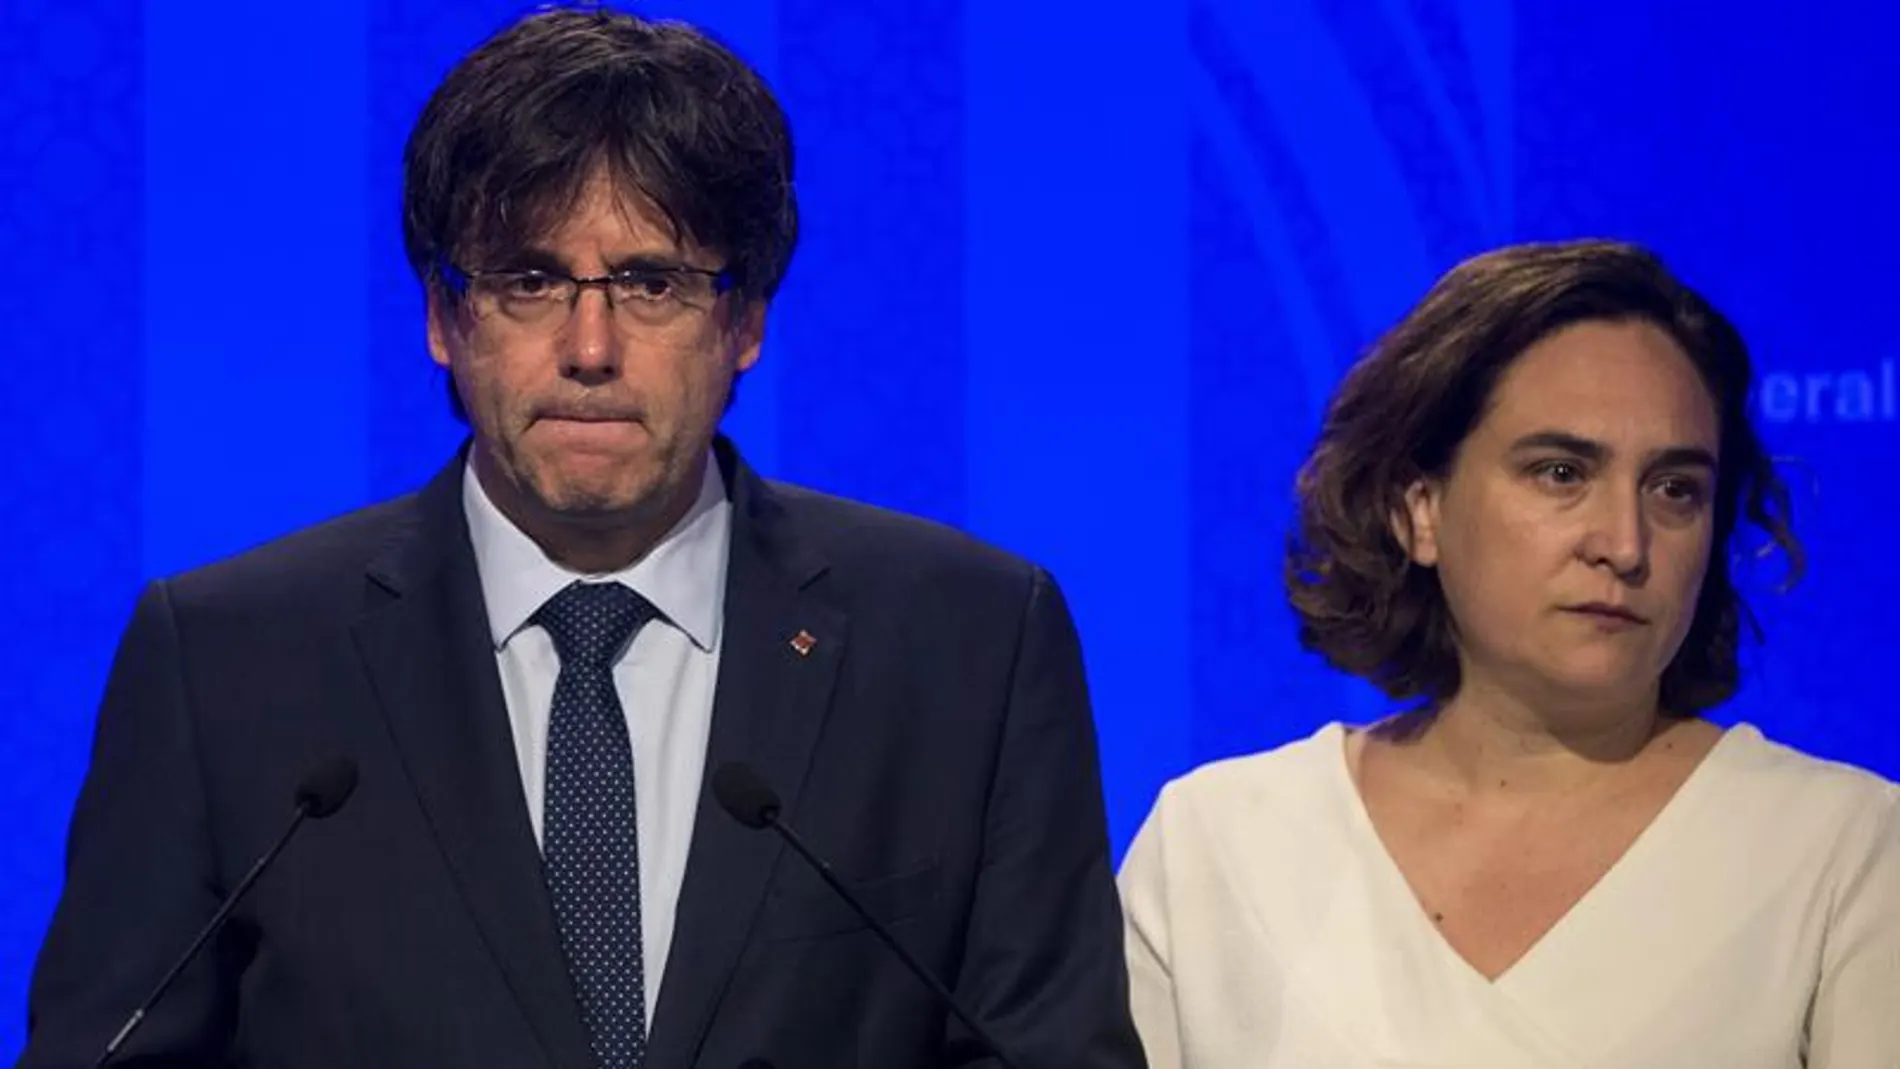 El presidente de la Generalitat Carles Puigdemont, y la alcaldesa de Barcelona, Ada Colau